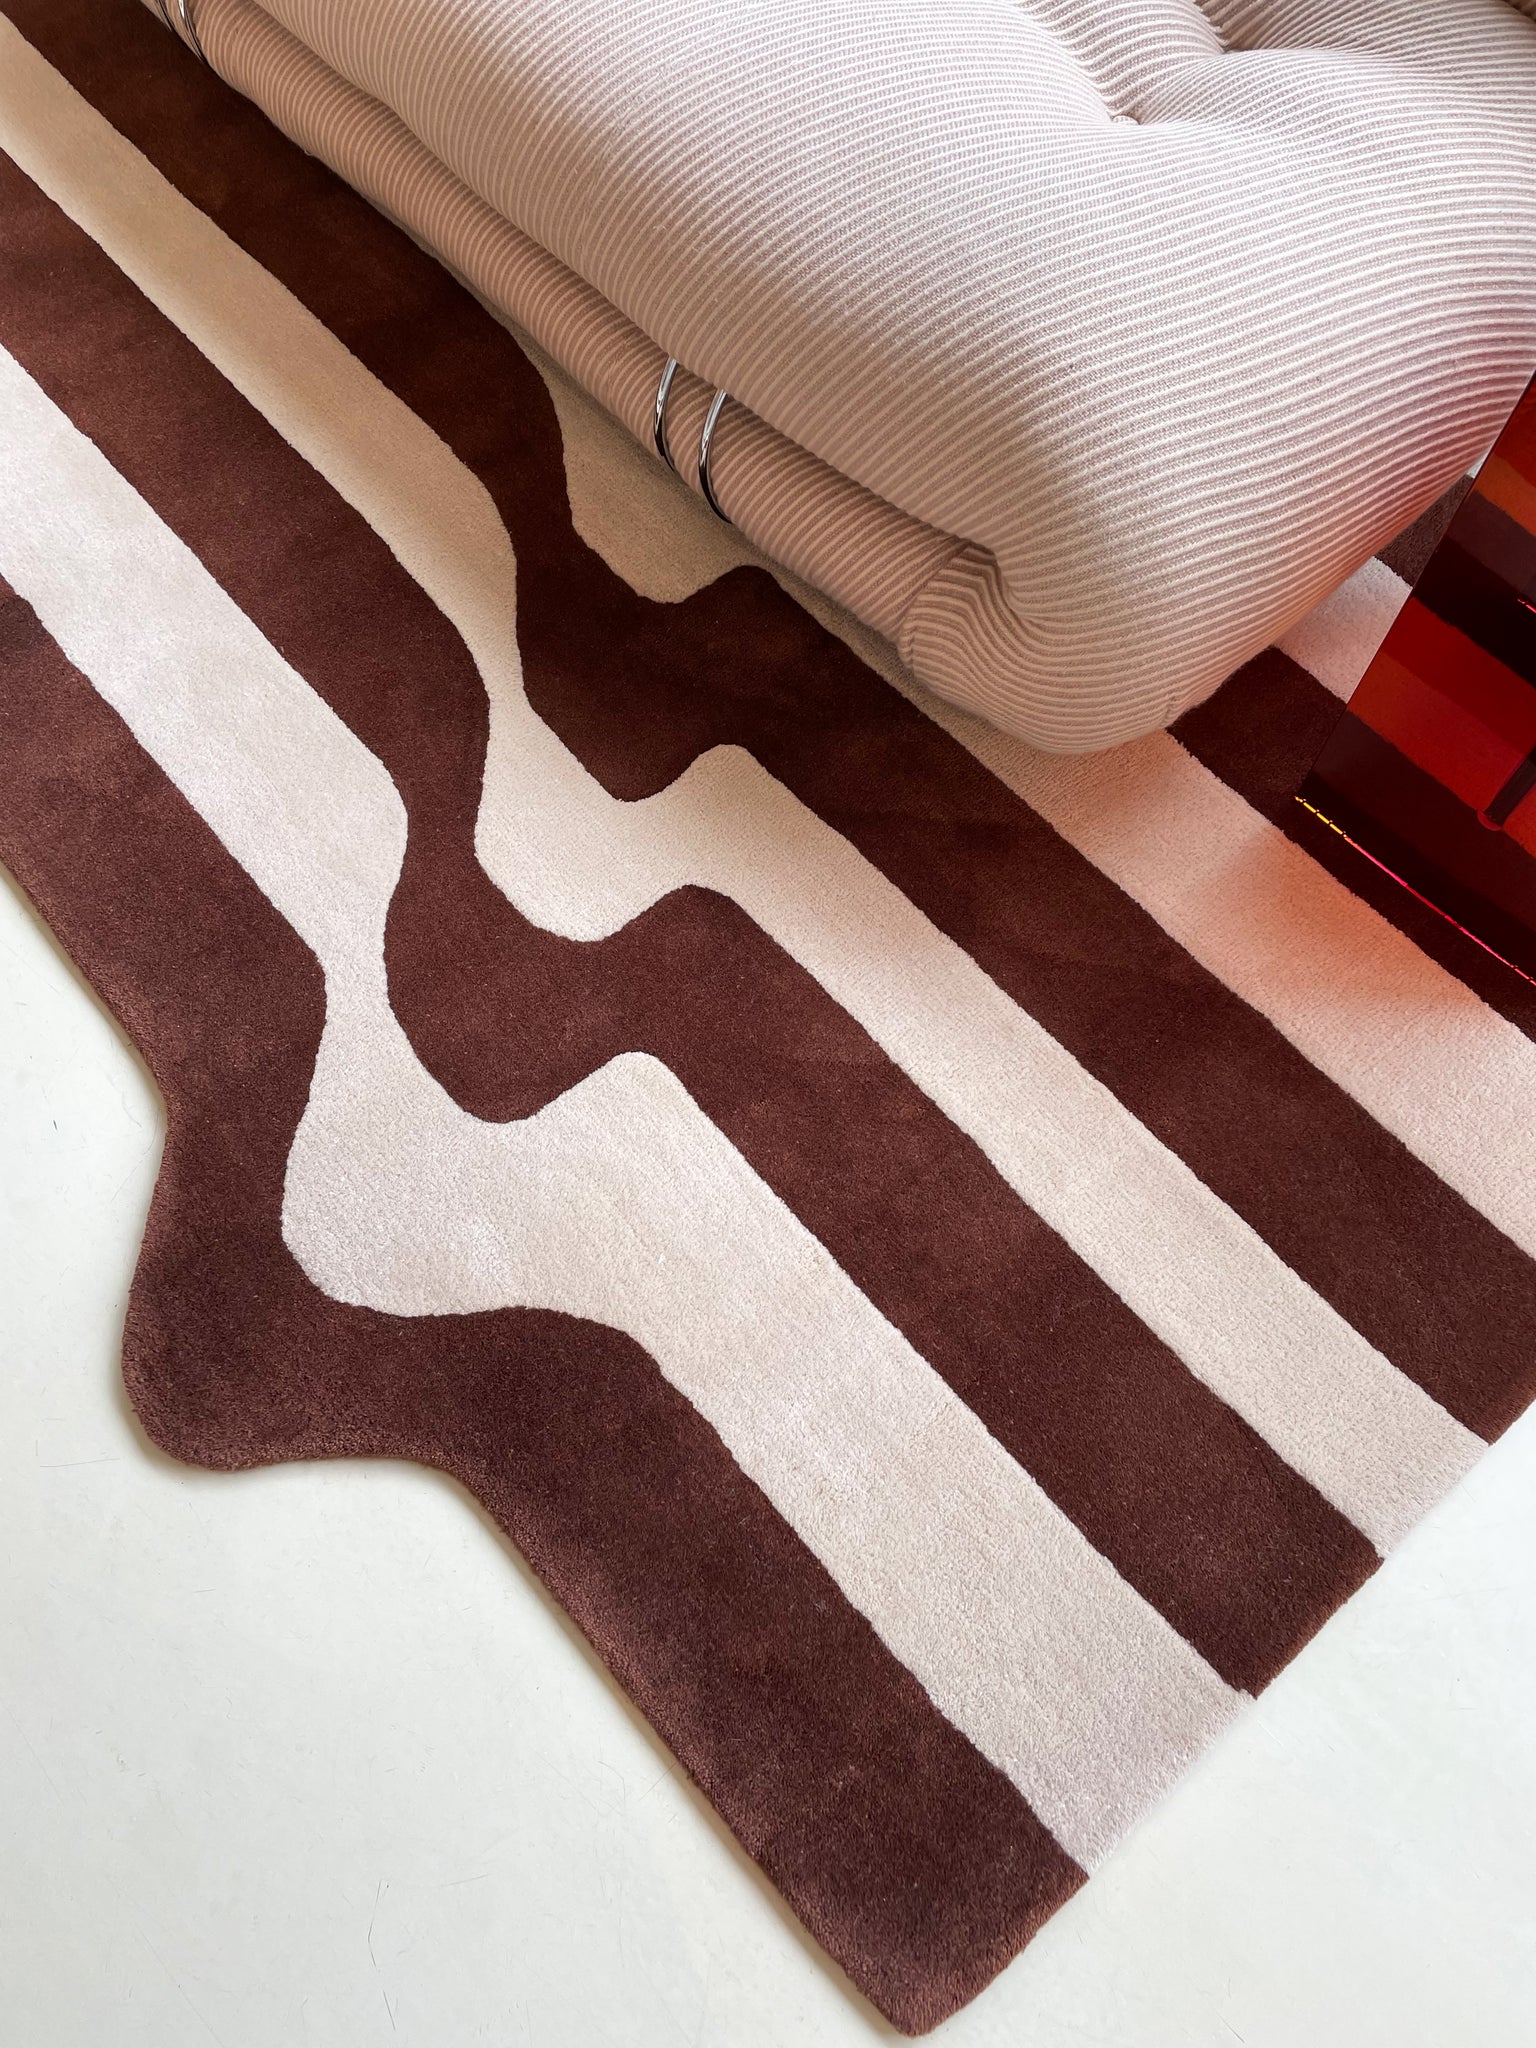 Salerno - Cortado Drip Stripe Wool Rug